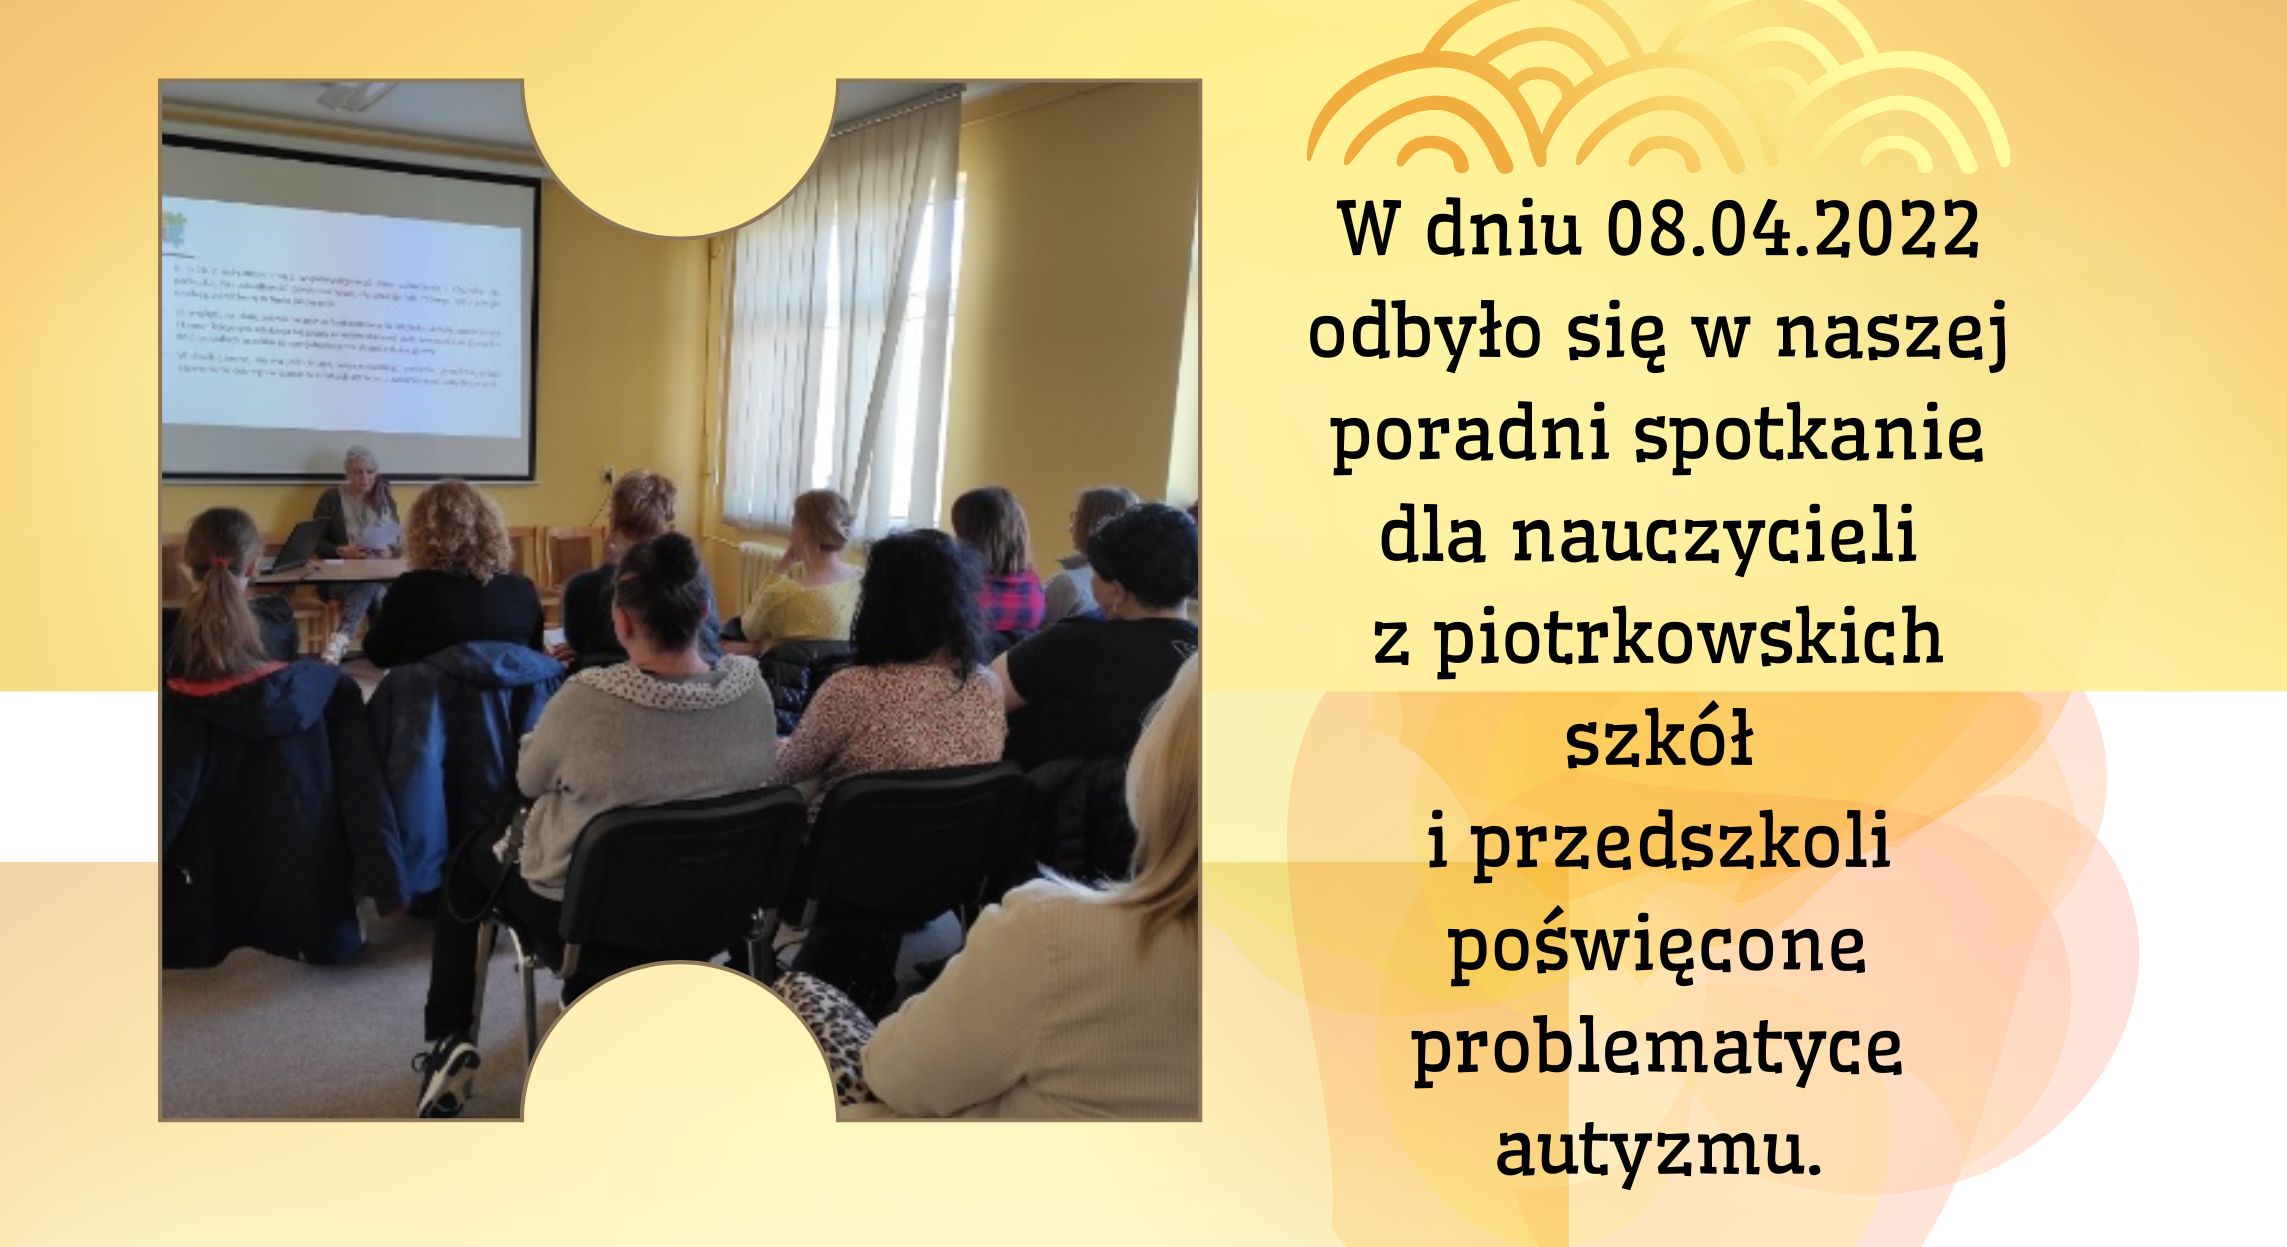 W dniu 08.04.2022 odbyło się w naszej poradni spotkanie dla nauczycieli z piotrkowskich szkół i przedszkoli poświęcone problematyce autyzmu.